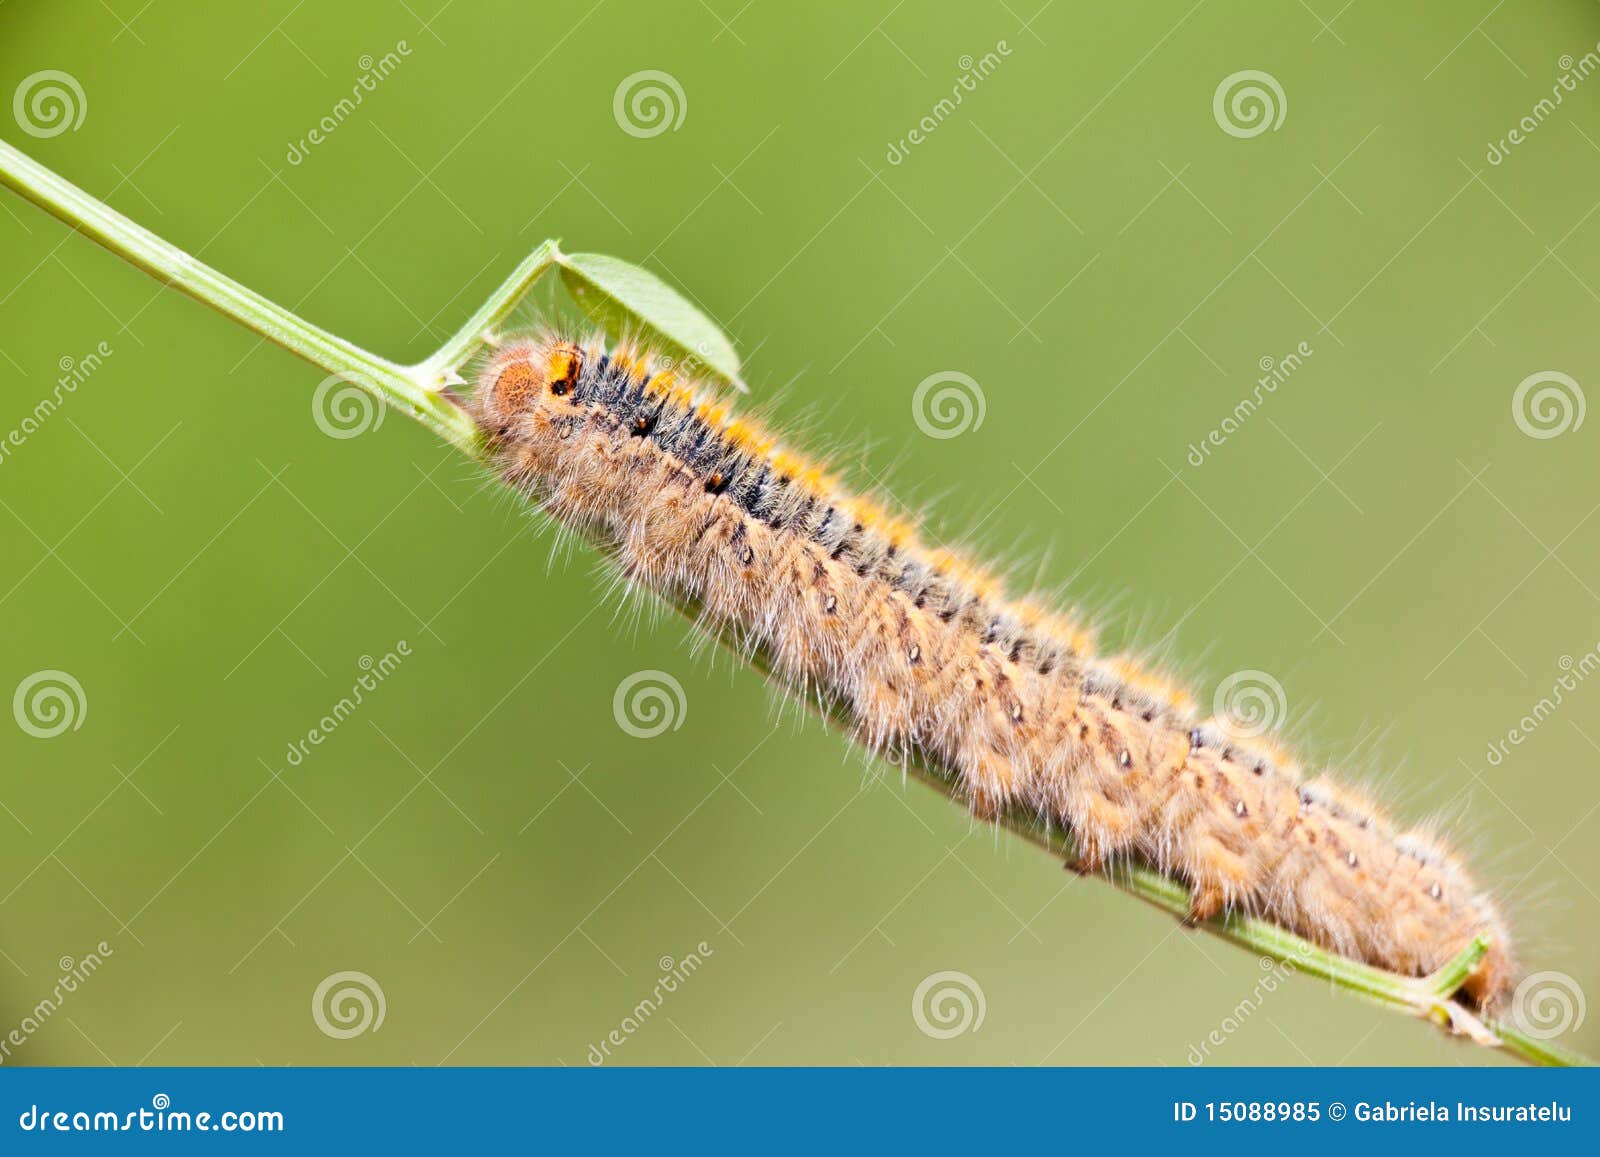 grass eggar caterpillar